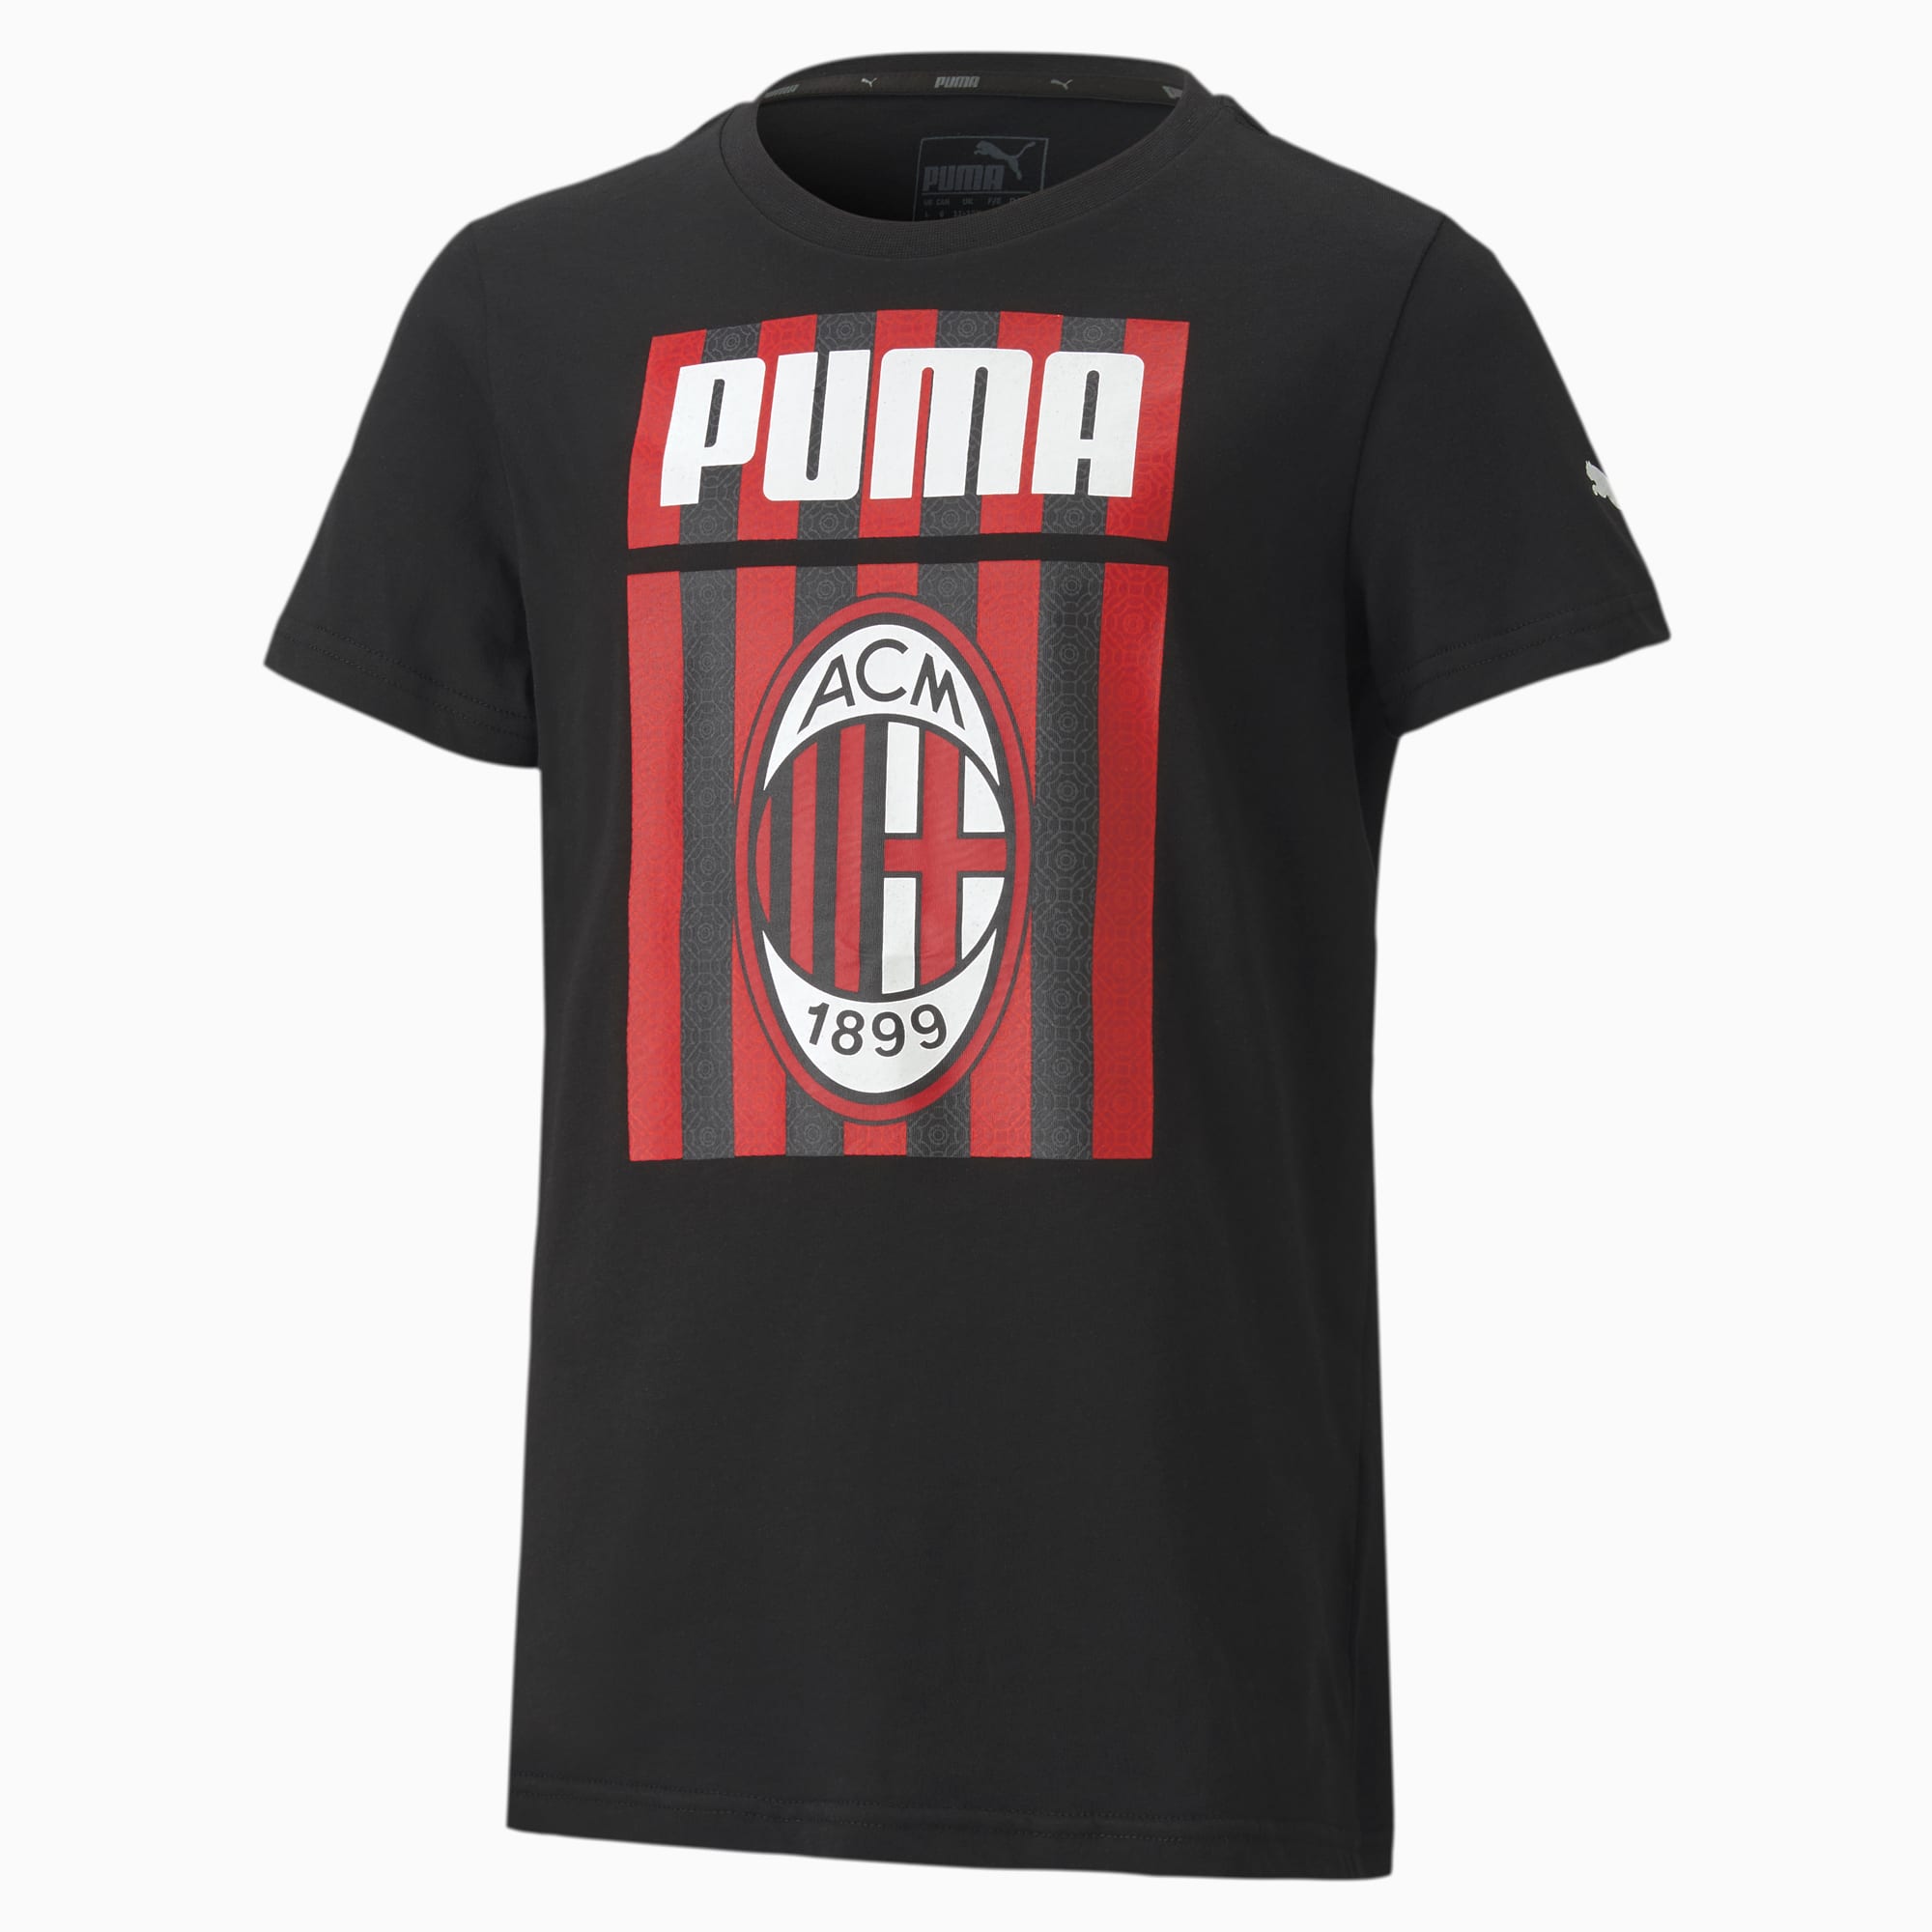 Image of PUMA AC Milan ftblCore Graphic Youth Fußball T-Shirt Für Kinder | Mit Aucun | Schwarz/Rot | Größe: 140